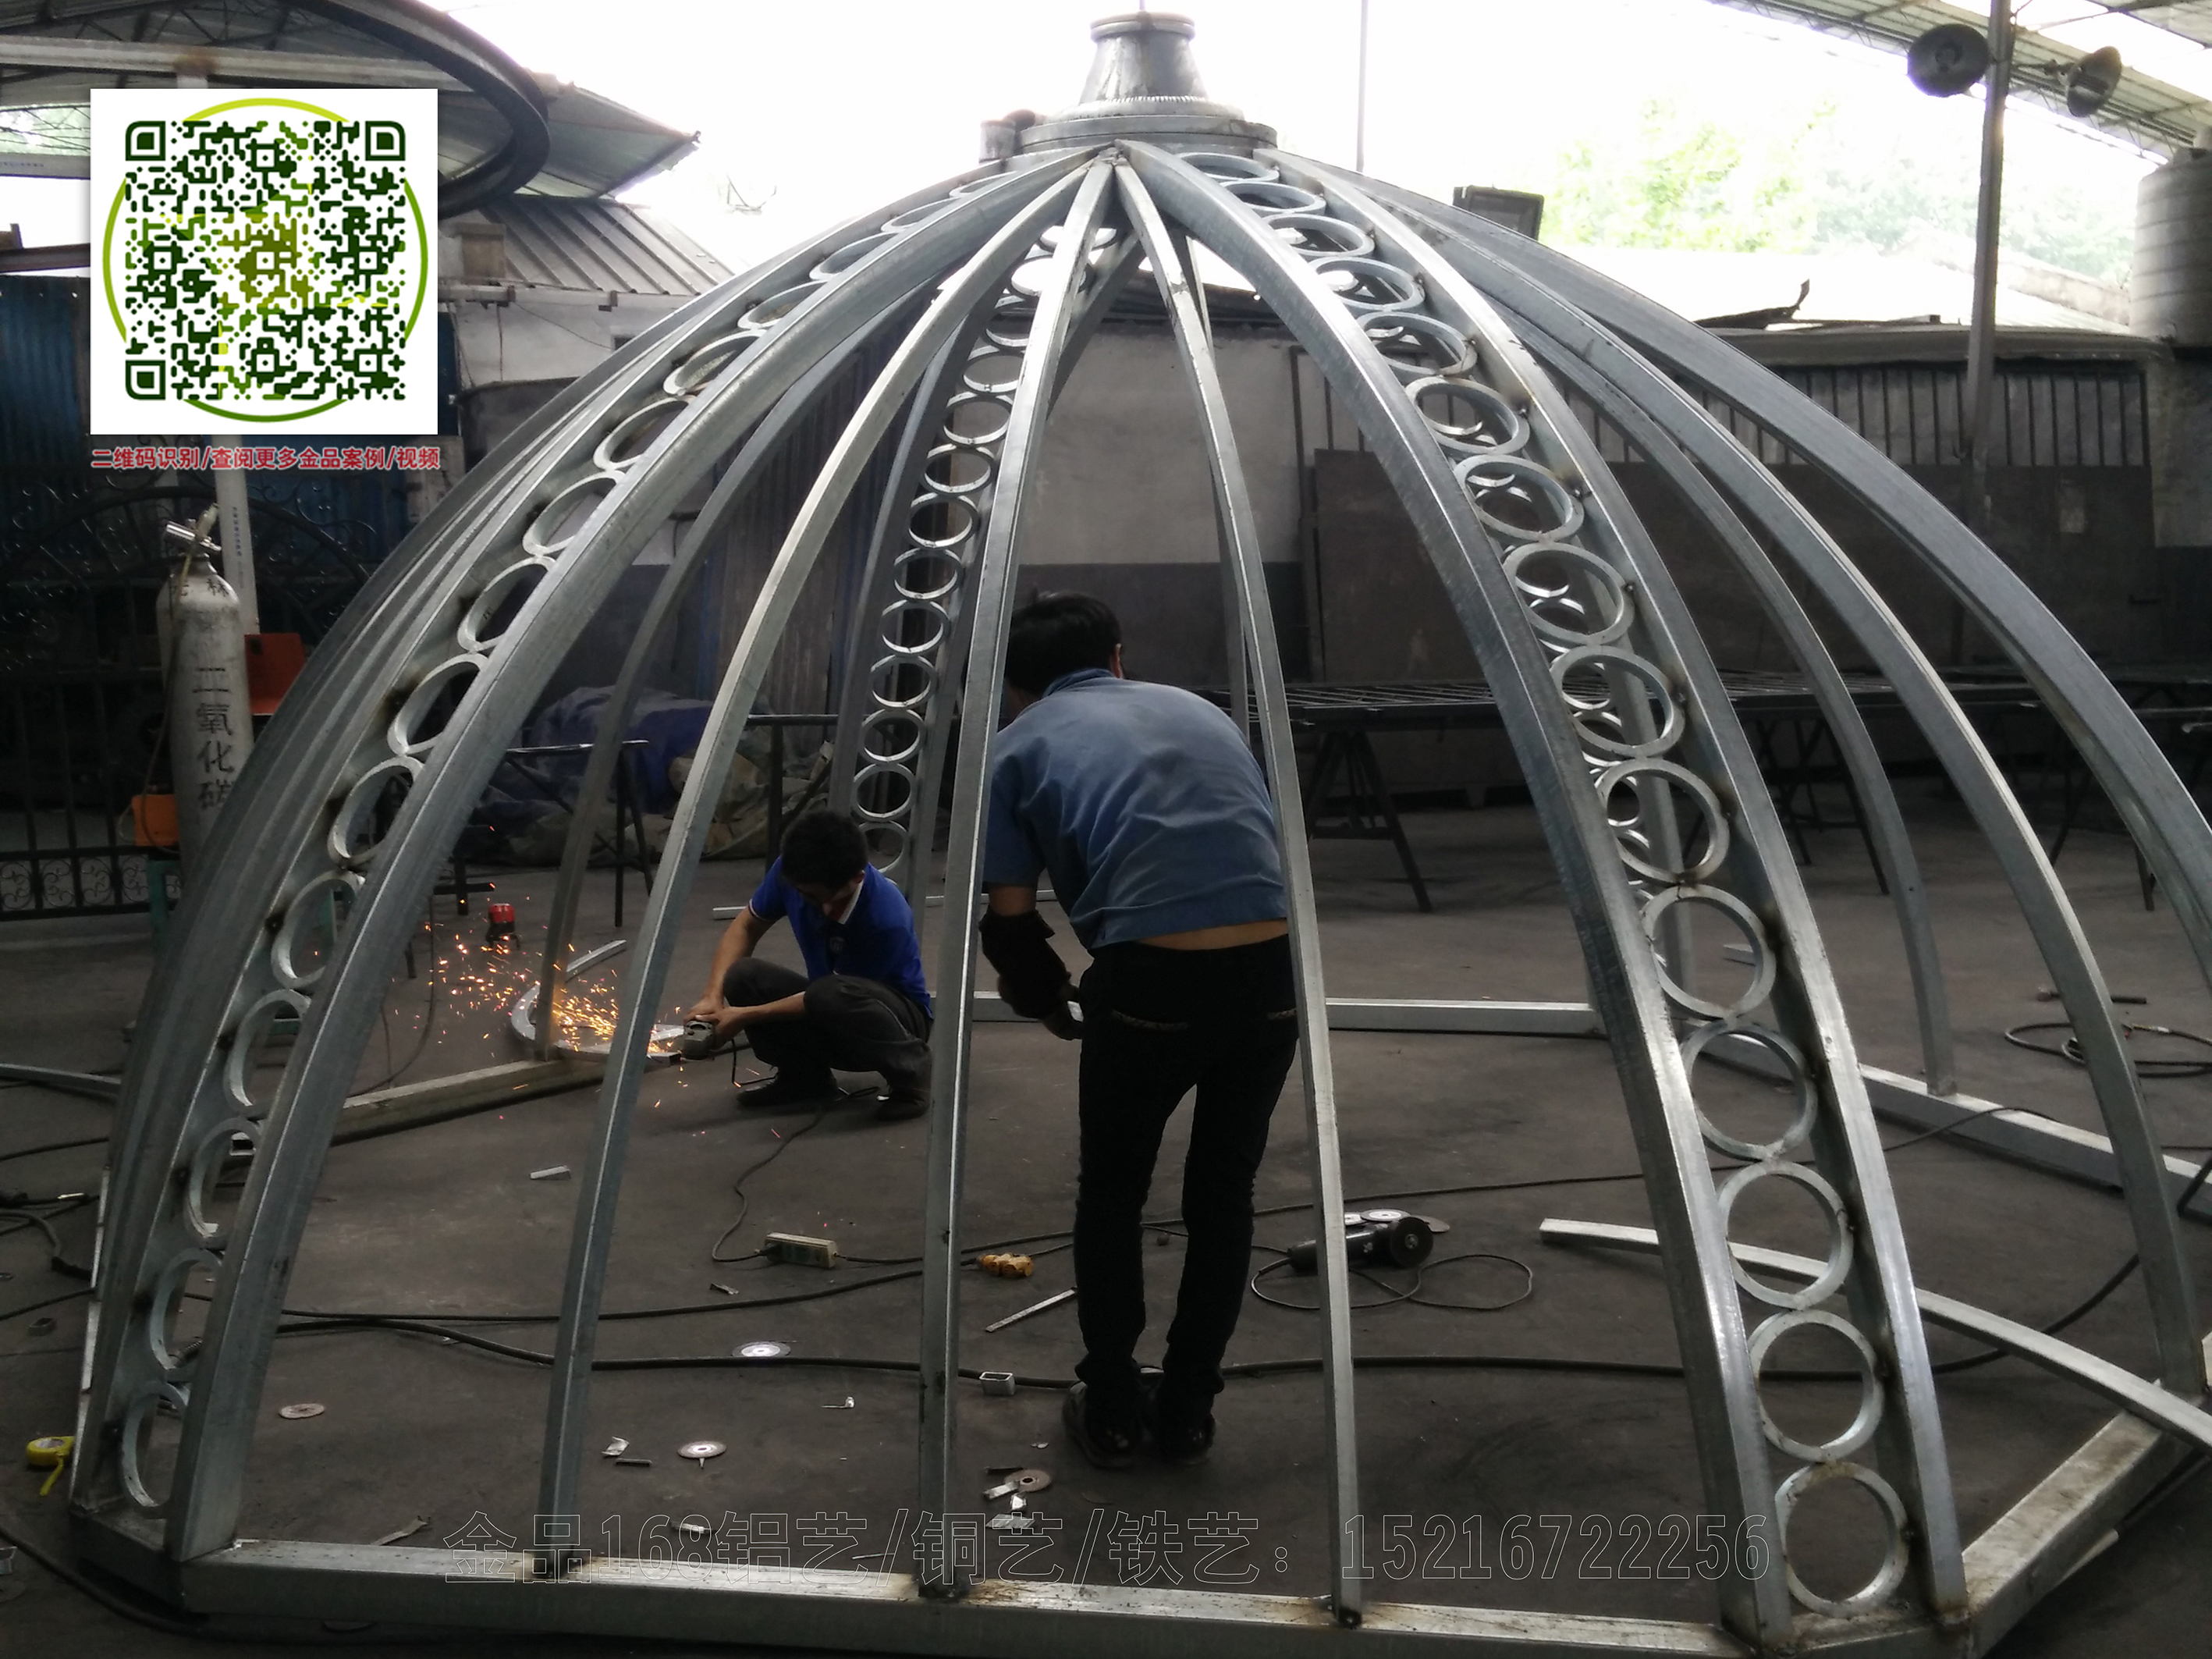 上海欧式铁艺穹顶工程设计安装造价、欧式铁艺穹顶制作厂家价格【上海铭鹰实业】